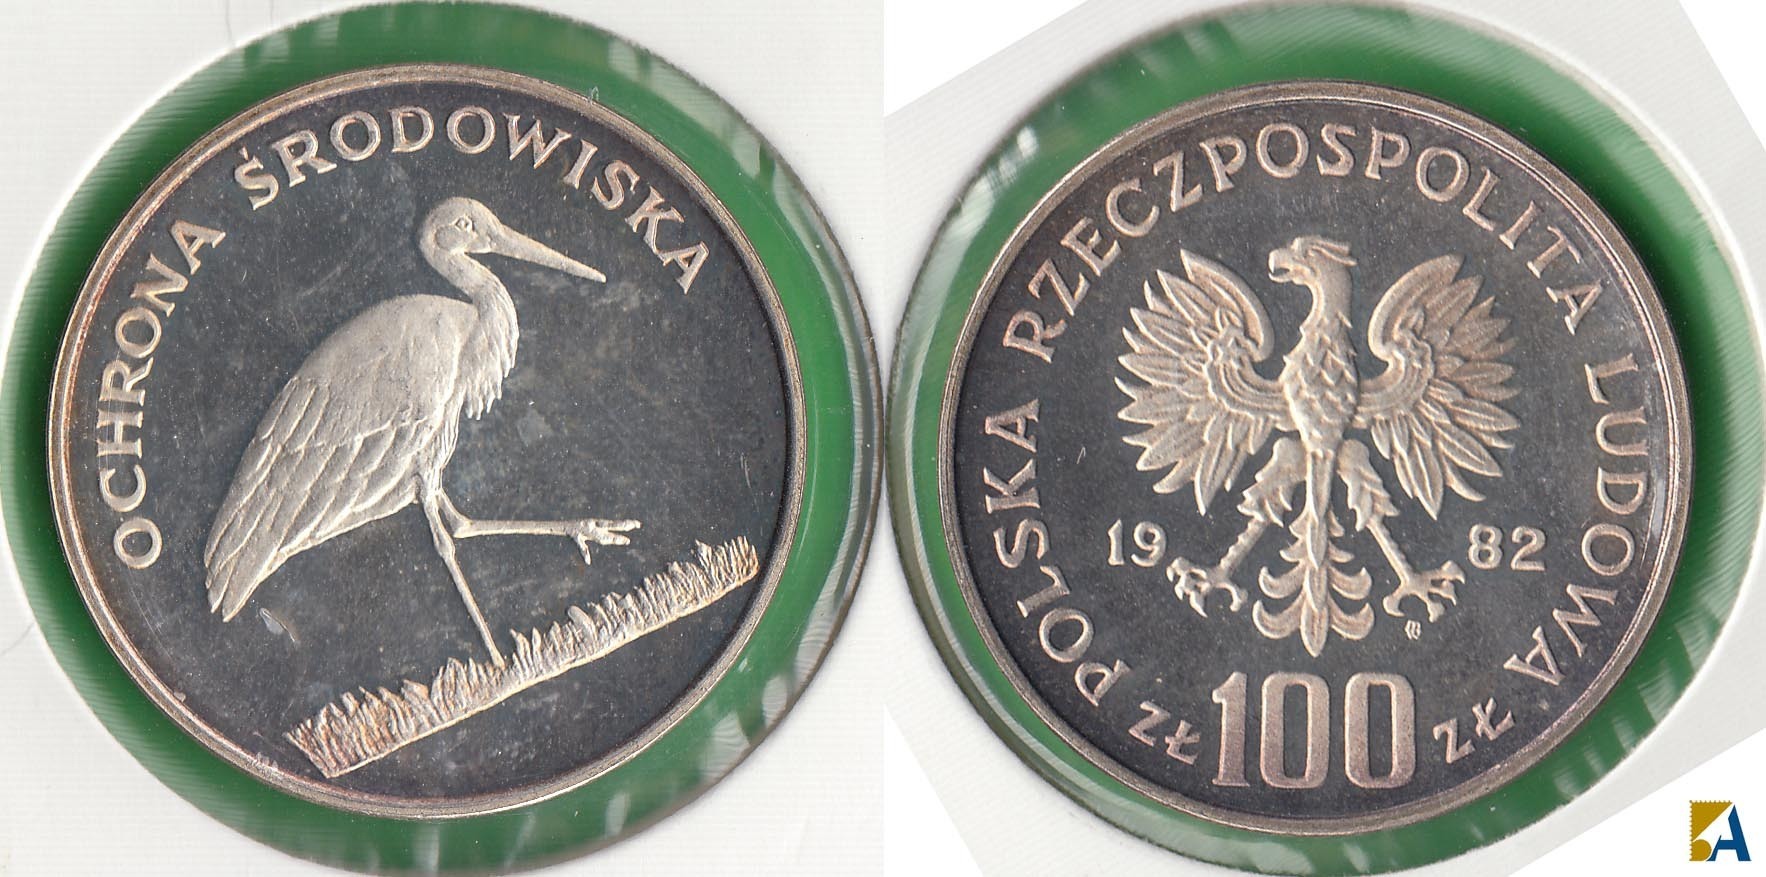 POLONIA - POLSKA. 100 ZLOTYCH DE 1982. PLATA 0.625.